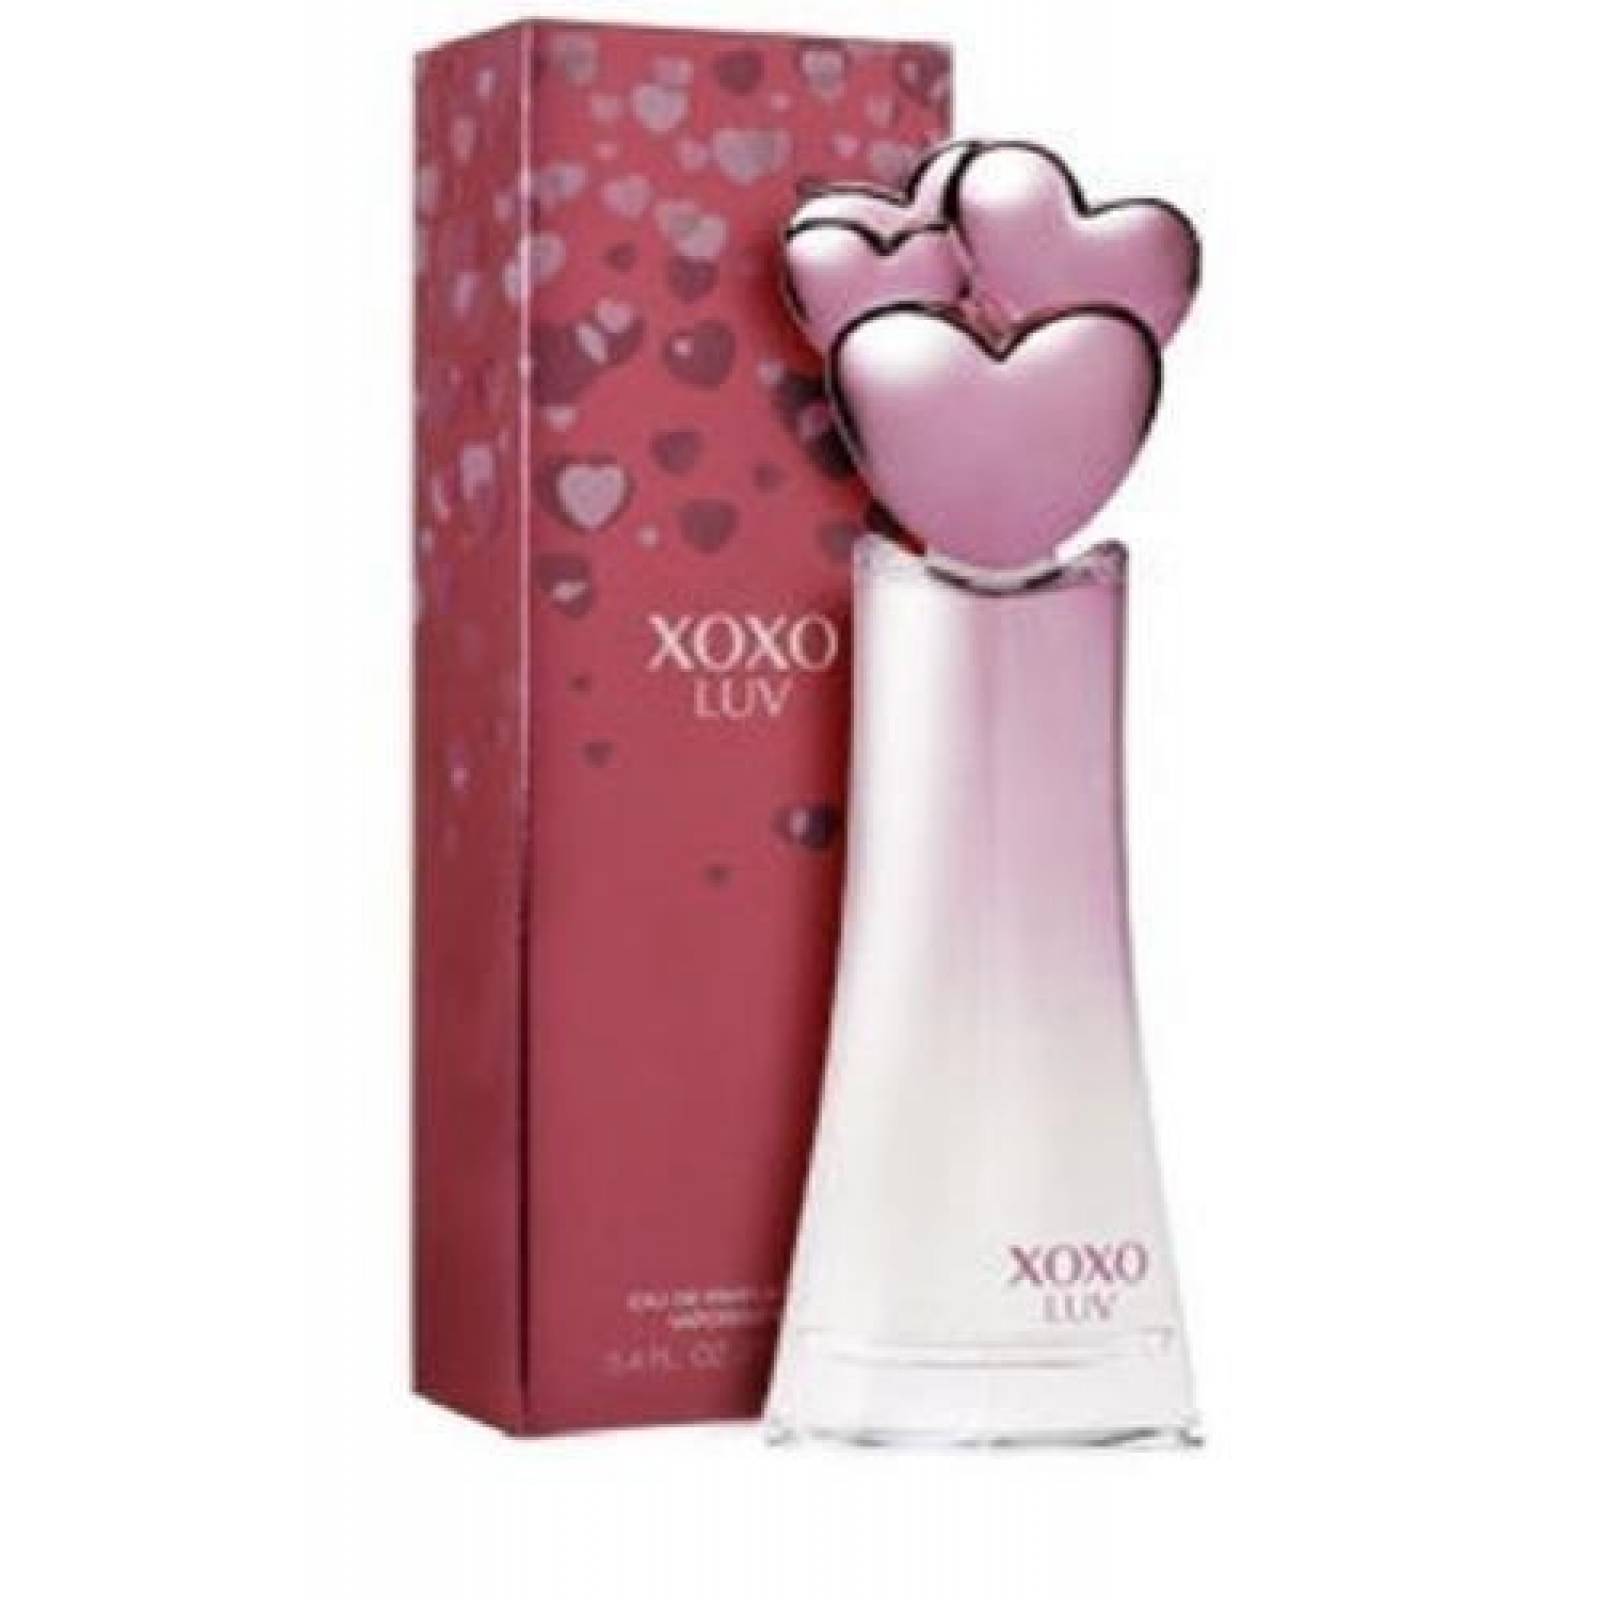 Xoxo Luv Dama 100 Ml Edp Spray - Perfume Original